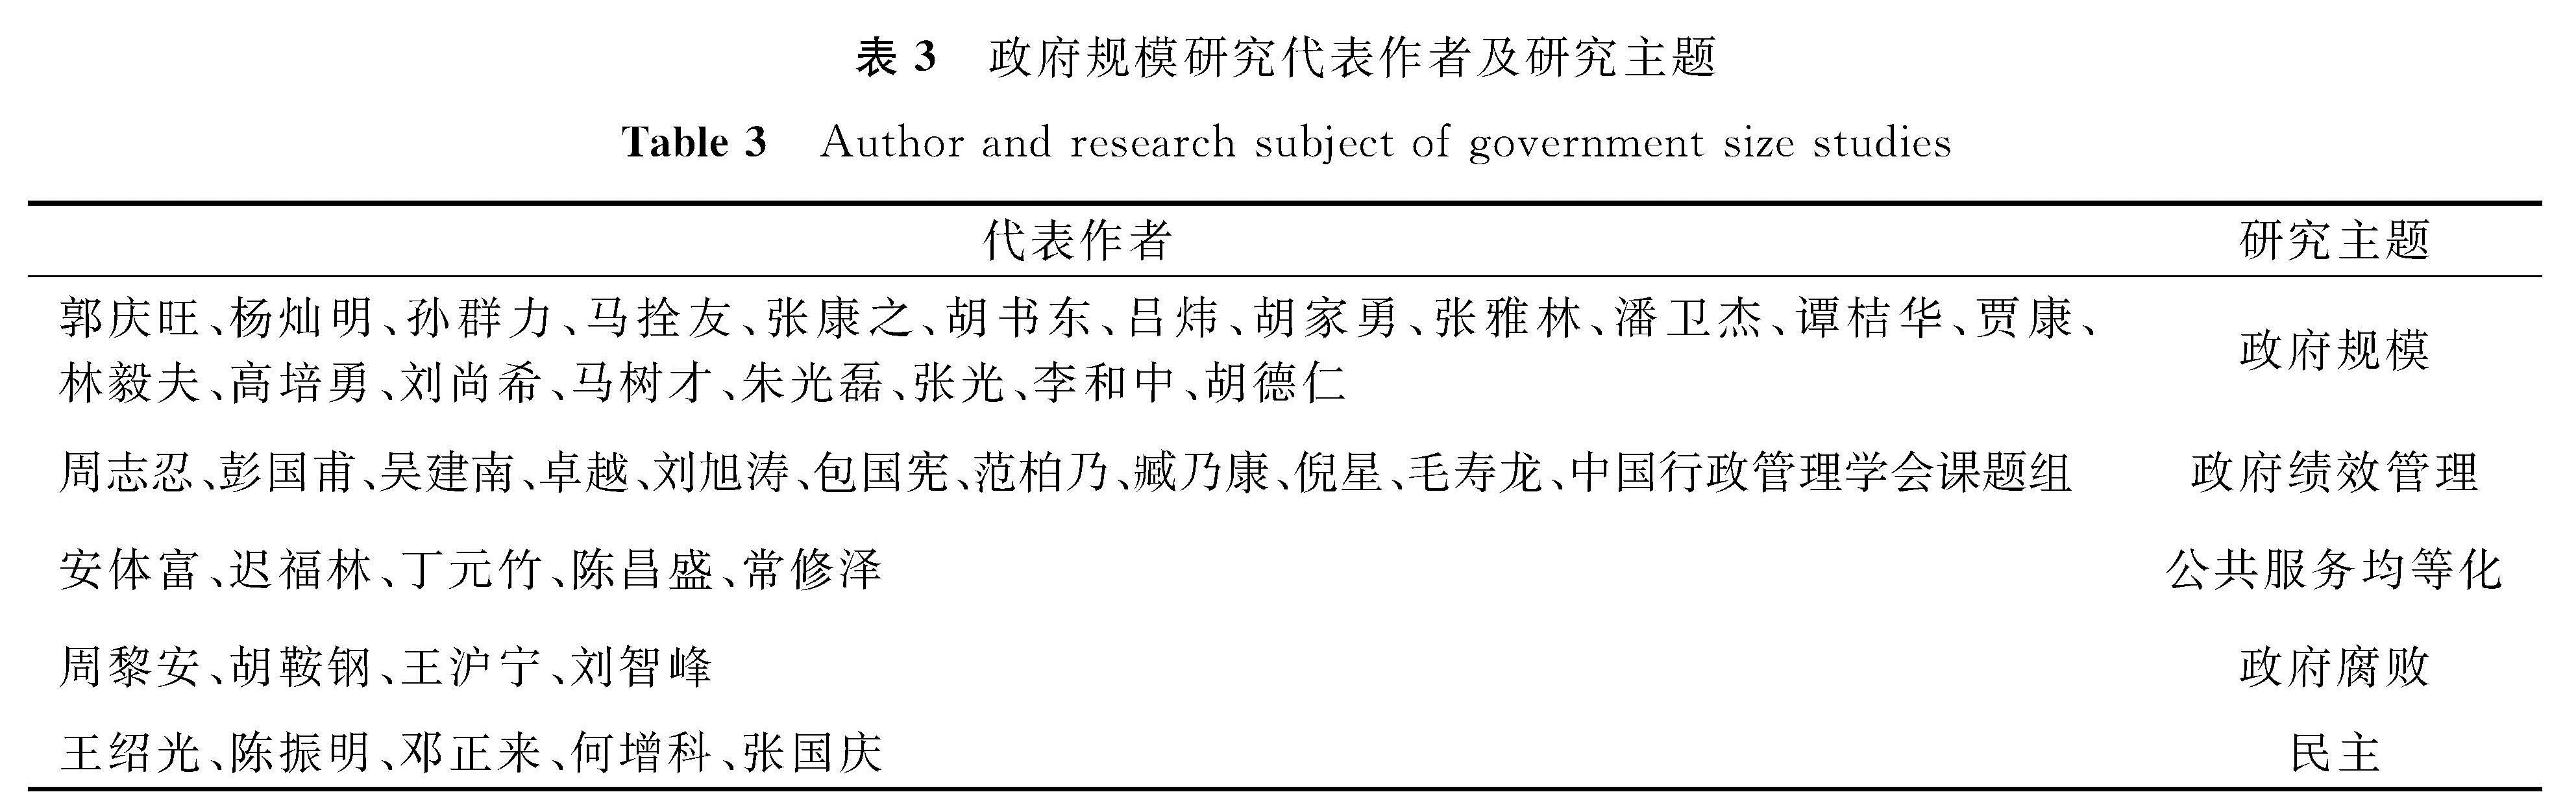 表3 政府规模研究代表作者及研究主题<br/>Table 3 Author and research subject of government size studies